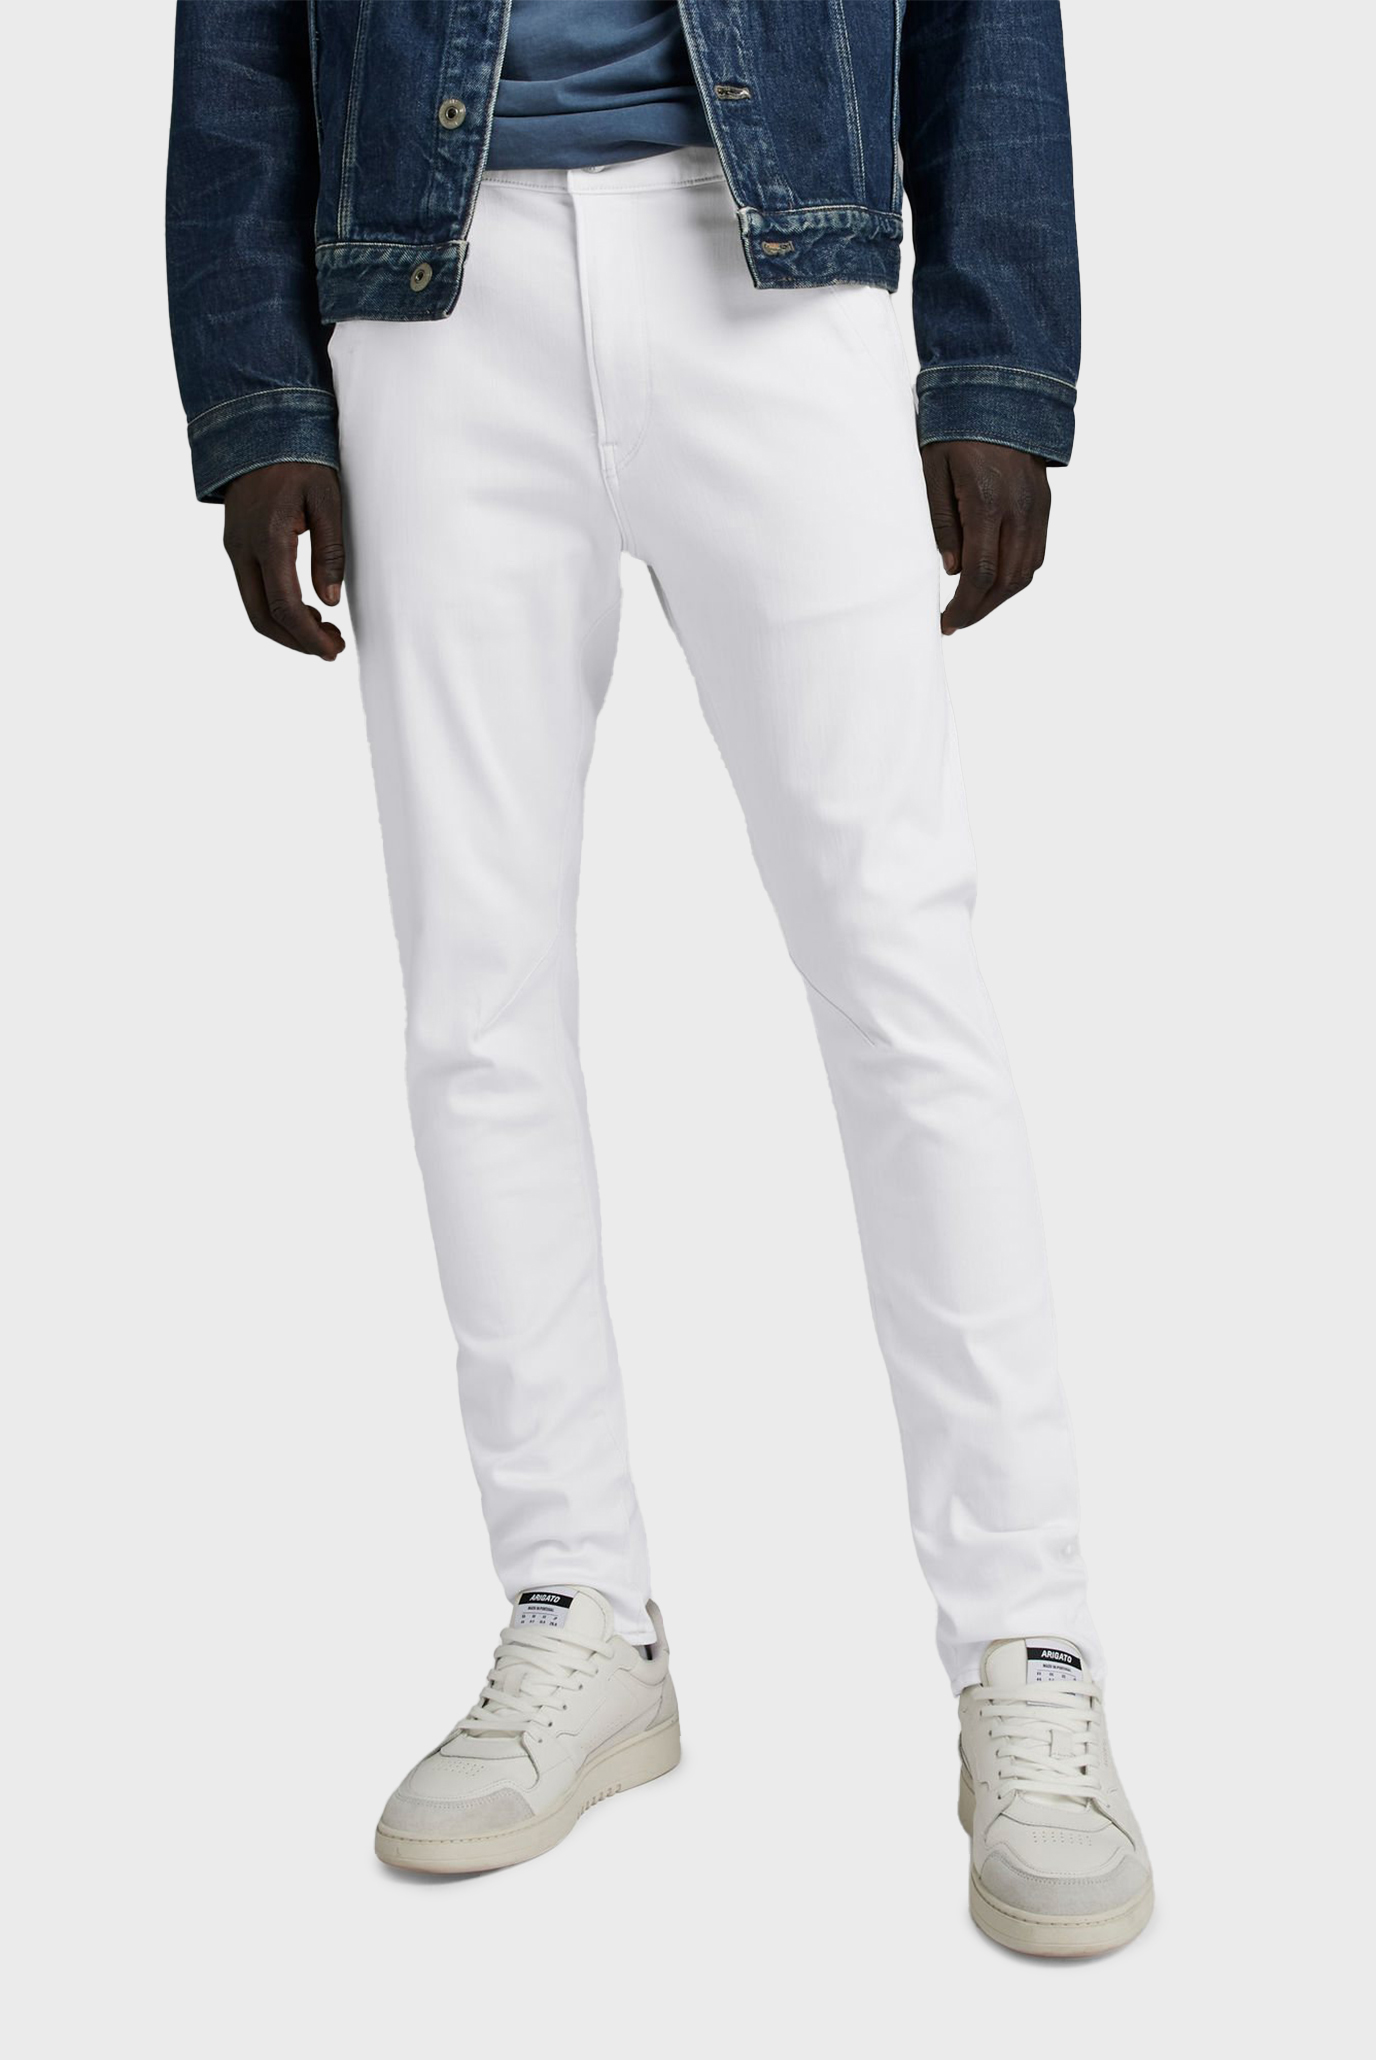 Чоловічі білі джинси Kairori 3D 1